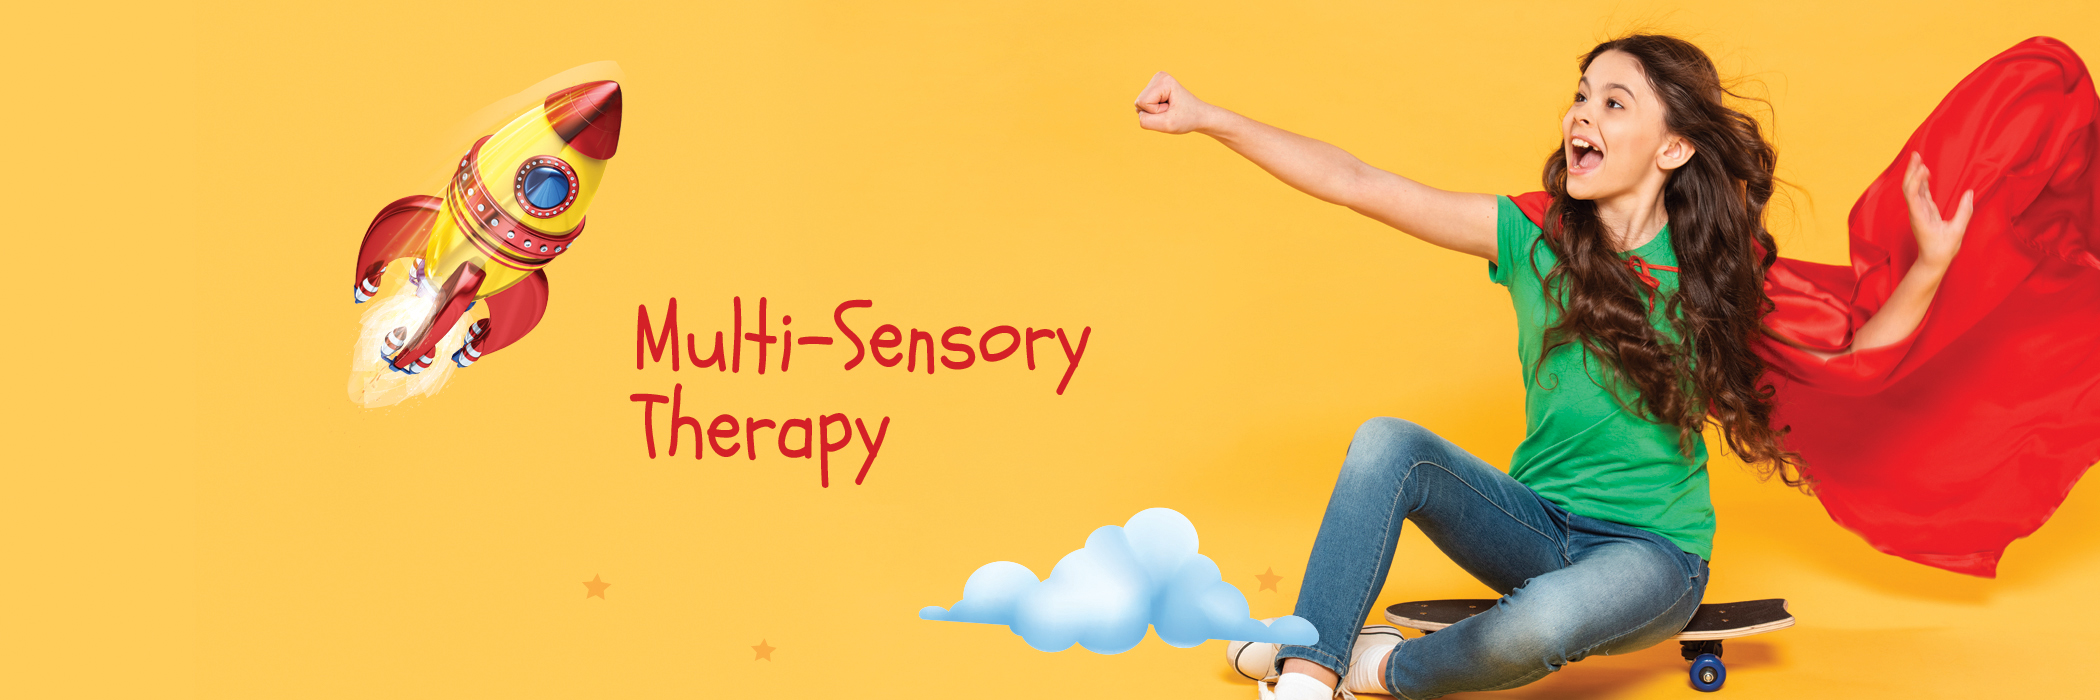 sgda multi-sensory therapy for dyslexia